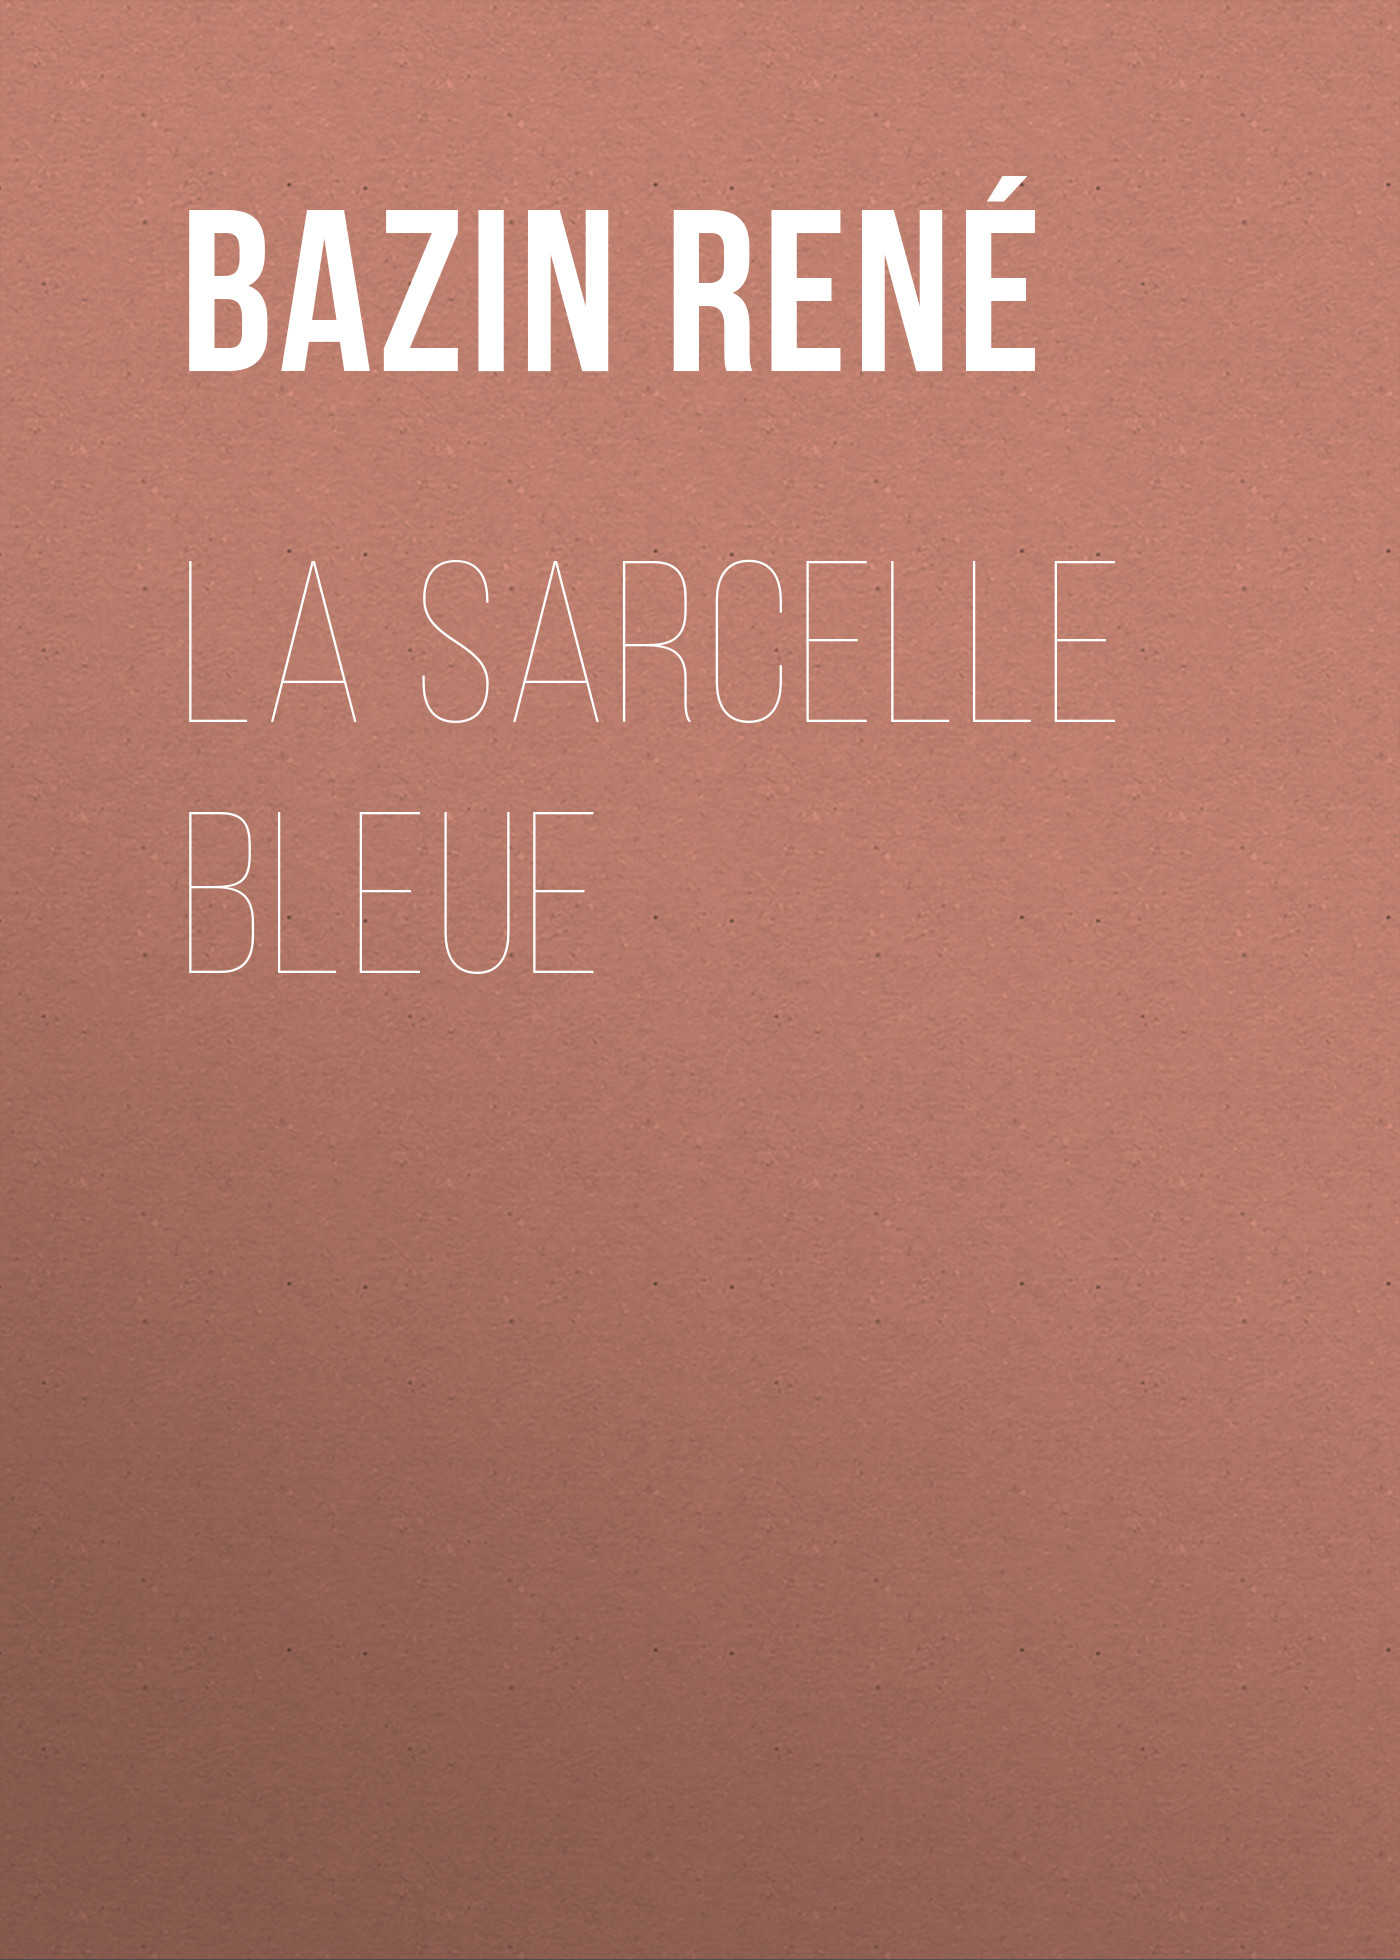 Книга La Sarcelle Bleue из серии , созданная René Bazin, может относится к жанру Зарубежная классика, Зарубежная старинная литература, Иностранные языки. Стоимость электронной книги La Sarcelle Bleue с идентификатором 24172652 составляет 0.90 руб.